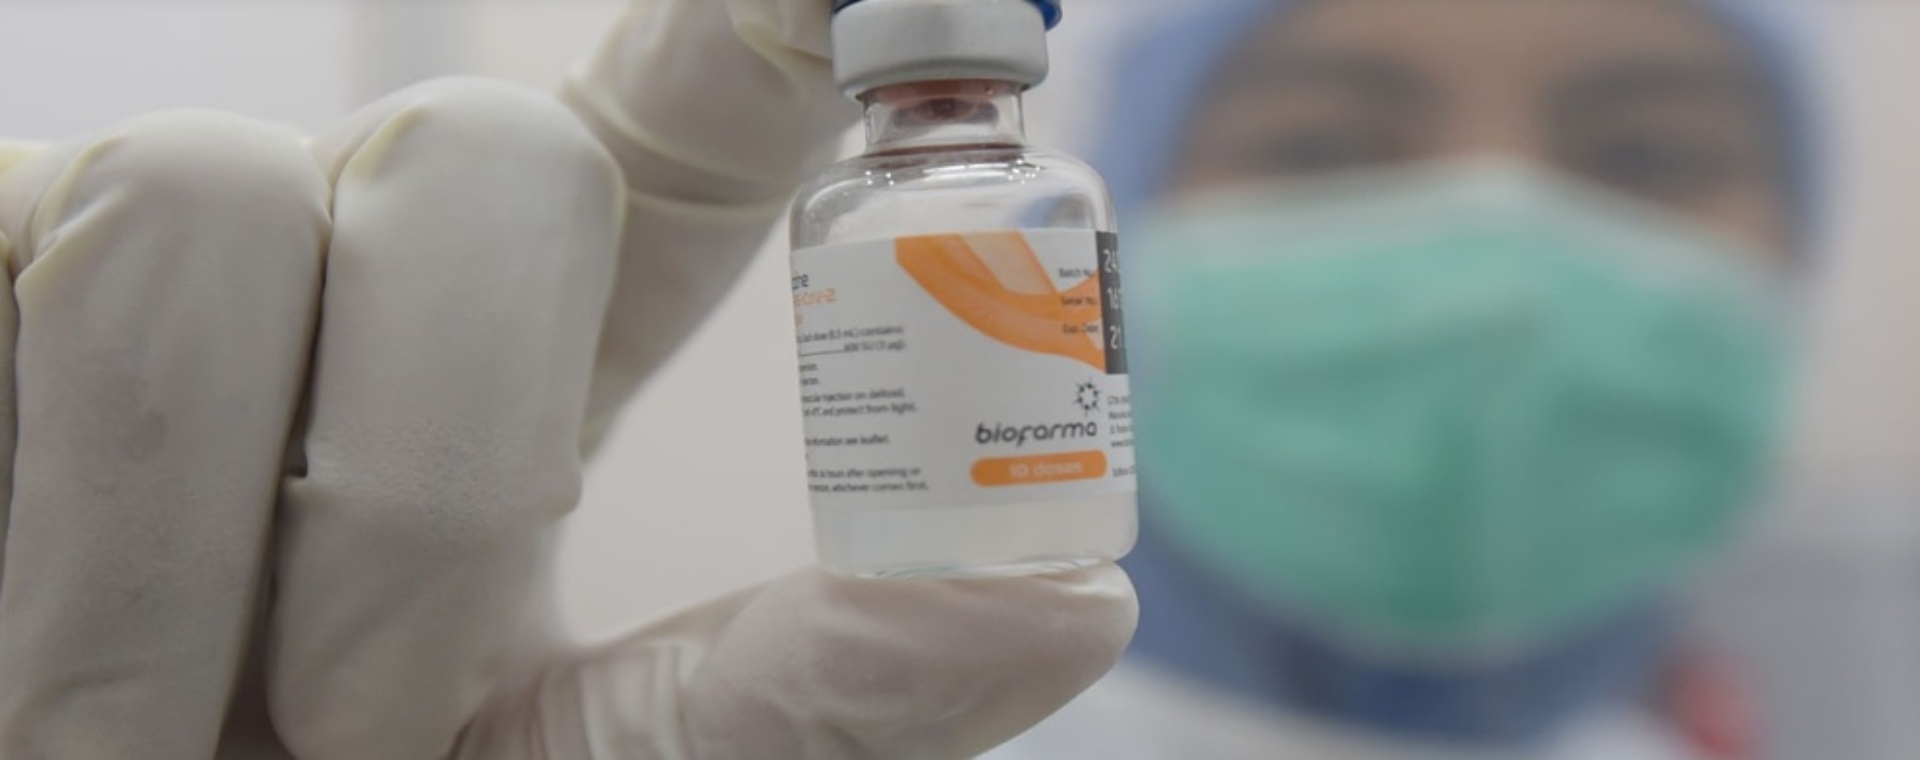 IndoVac merupakan vaksin Covid-19 berbasis teknologi subunit rekombinan protein yang diproduksi oleh PT Bio Farma (Persero). Bio Farma mulai melakukan riset dan pengembangan vaksin Covid-19 sejak November 202124 September 2022. - Setkab.go.id